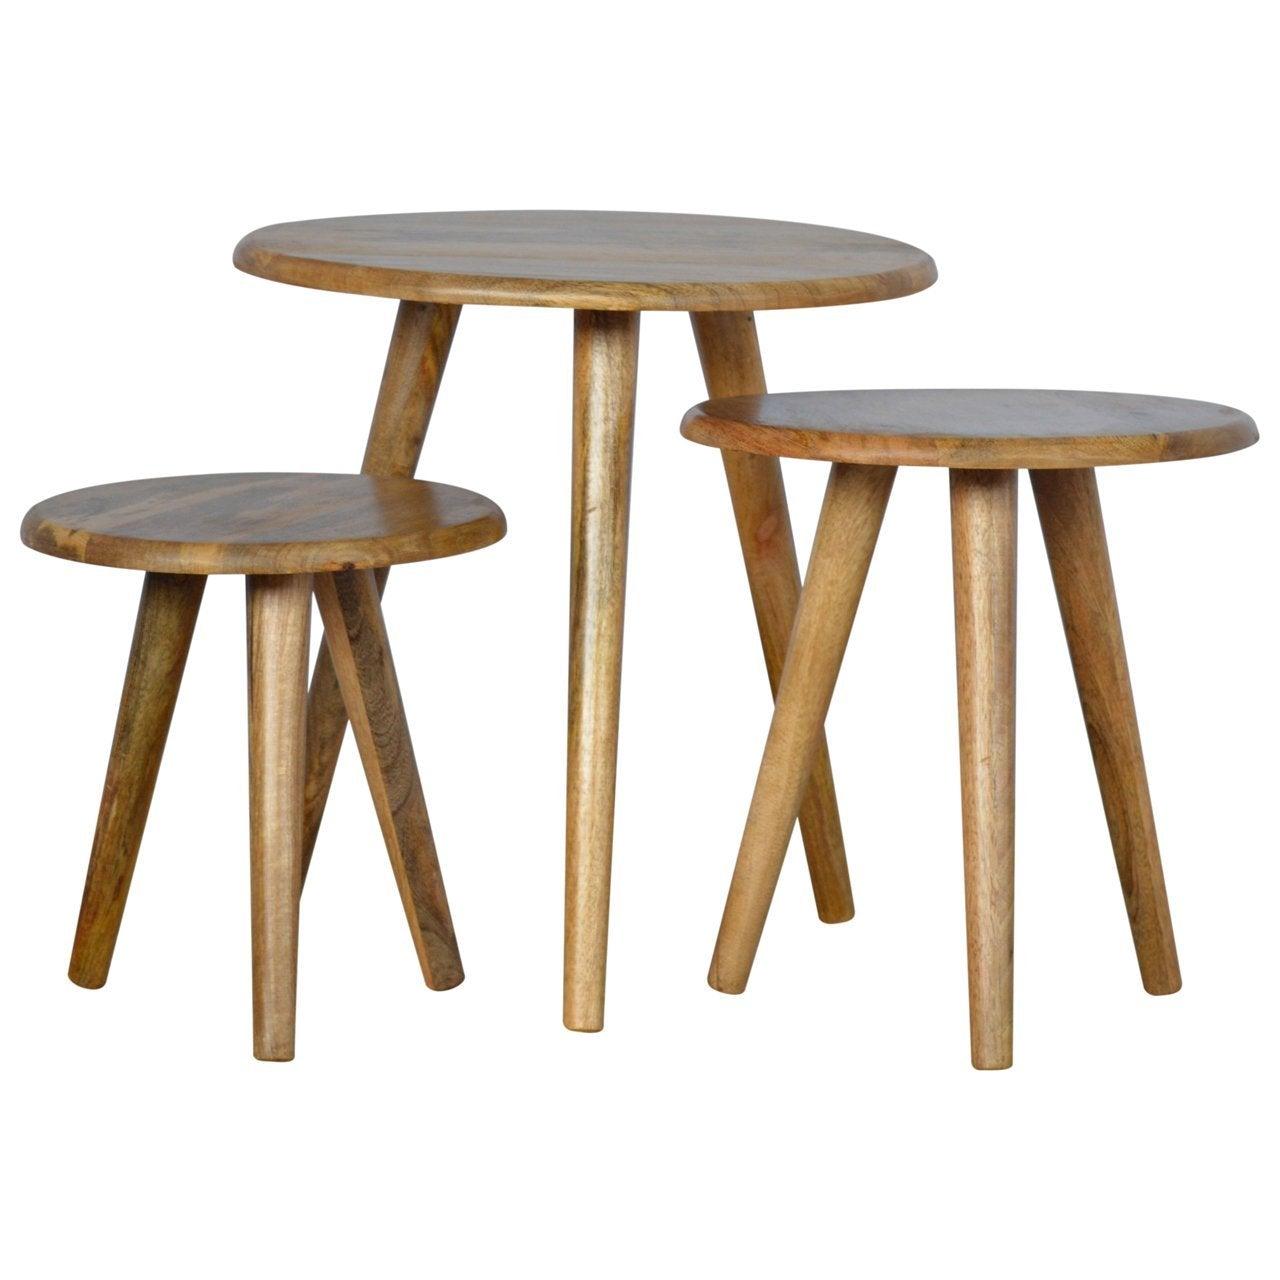 Nordic style stool set of 3 - crimblefest furniture - image 7